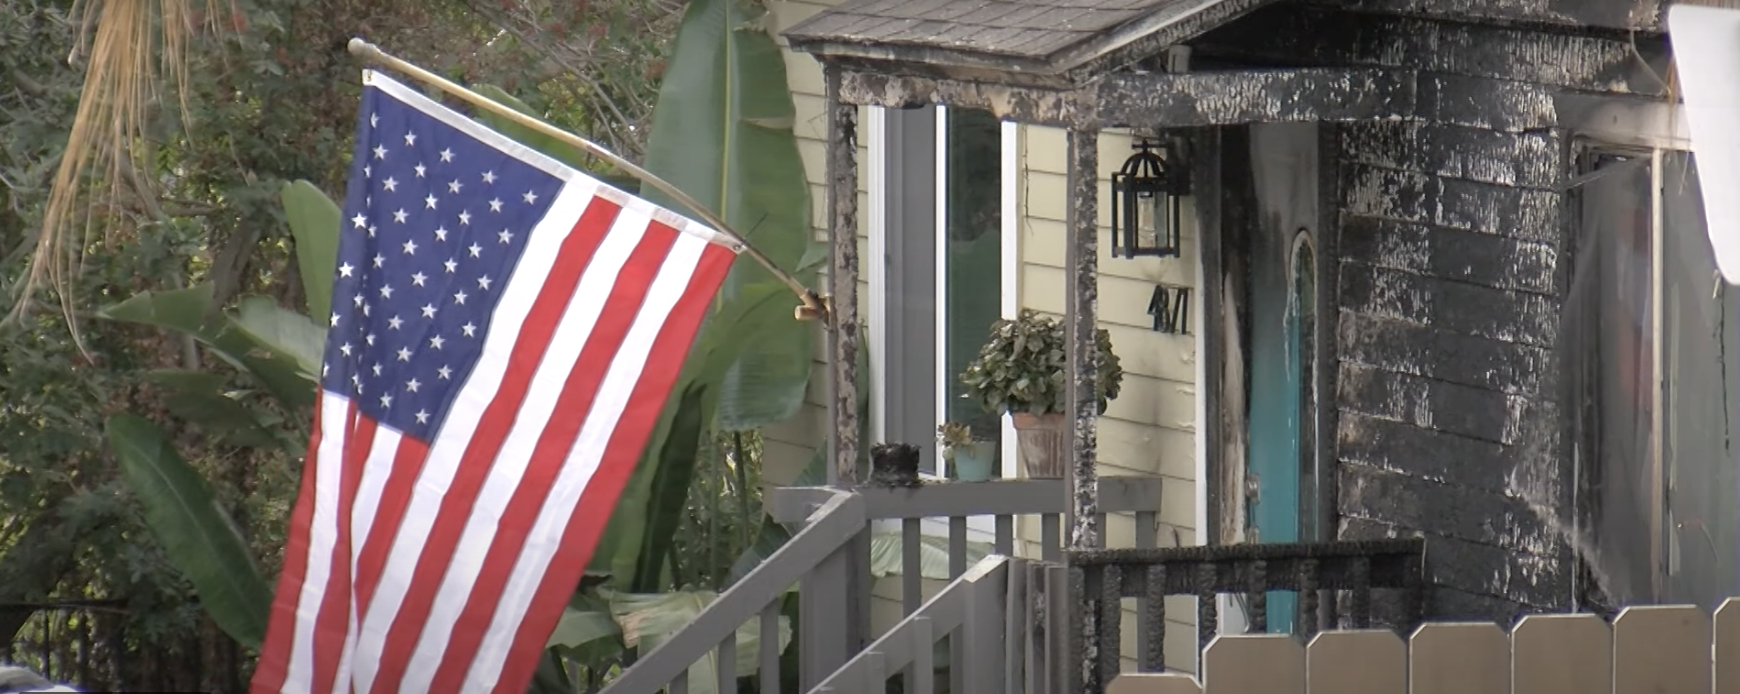 Fire burns home of Fletcher, Gonzalez in City Heights